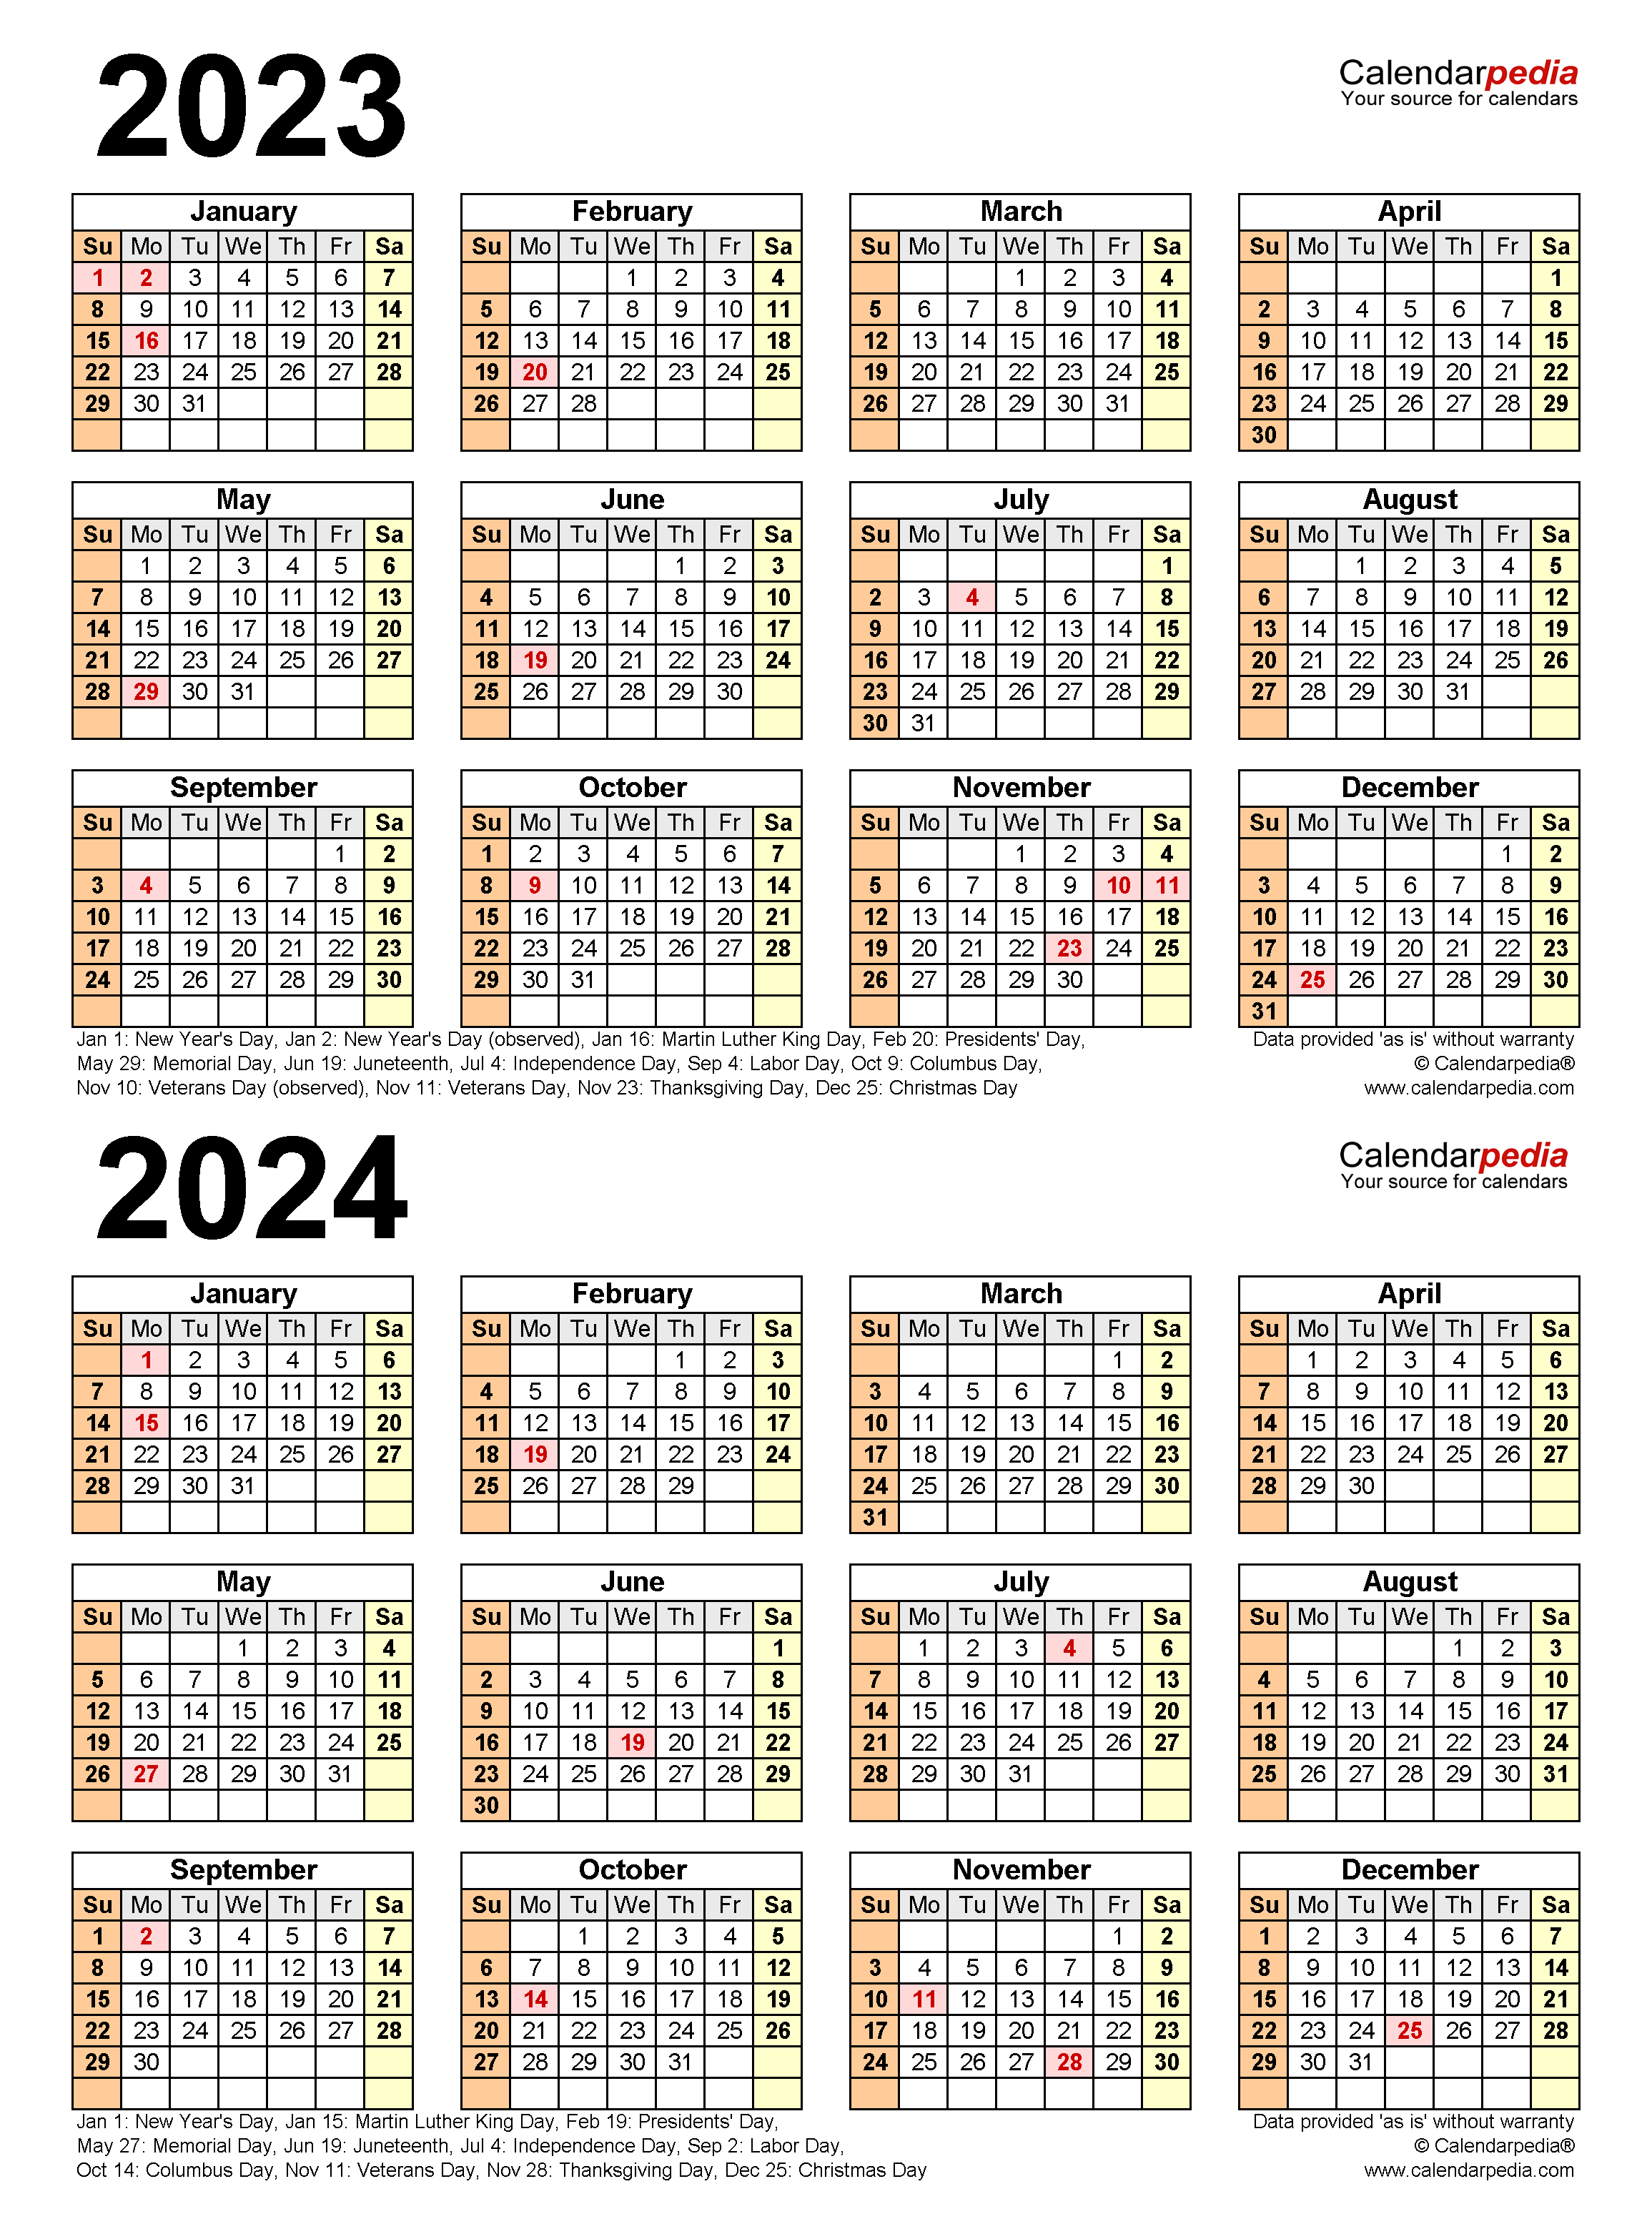 Western University Academic Calendar